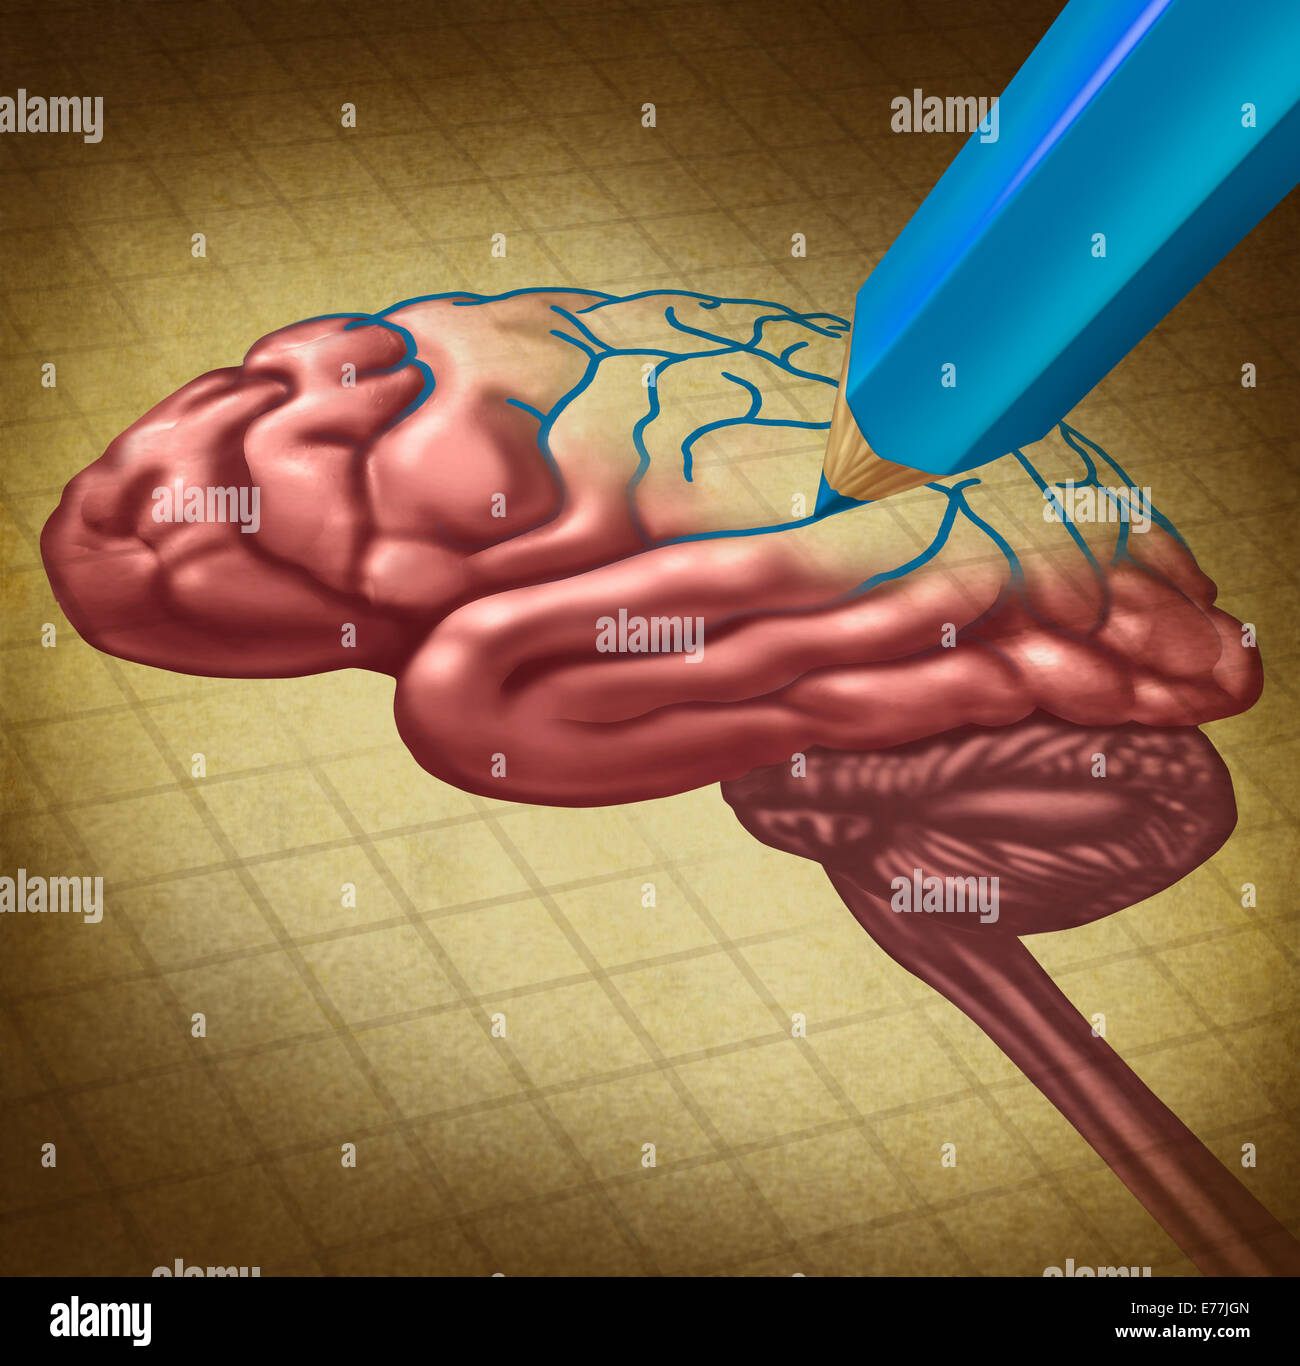 Das Gehirn zu reparieren und wiederherstellen verlorene Erinnerung medizinisches Konzept als ein Organ des menschlichen Denkens mit einem fehlenden Teil wird mit einem blauen Stift als Symbol und Metapher für Arzt Versorgung und Forschung in der Neurologie oder Gehirnwäsche neu gezeichnet. Stockfoto